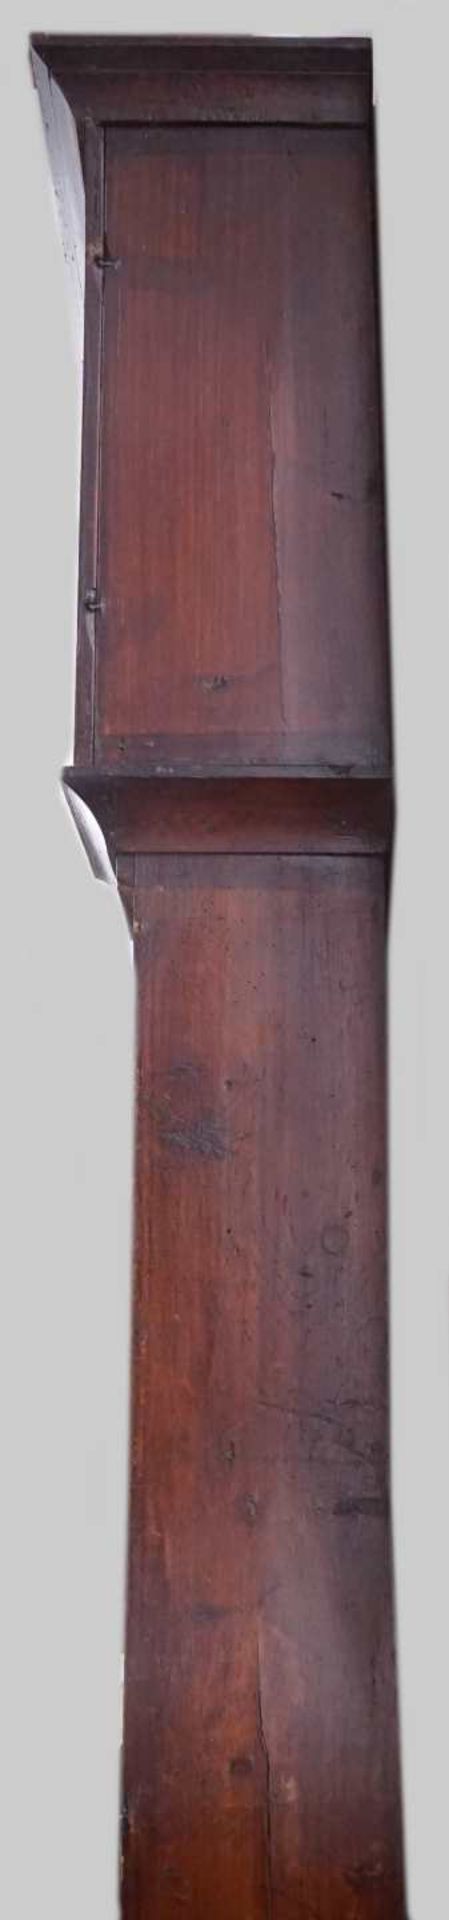 1 Standuhr 18. Jh., Weichholz geschnitzt, bemalt Emaillezifferblatt mit römischen Zif - Image 5 of 7